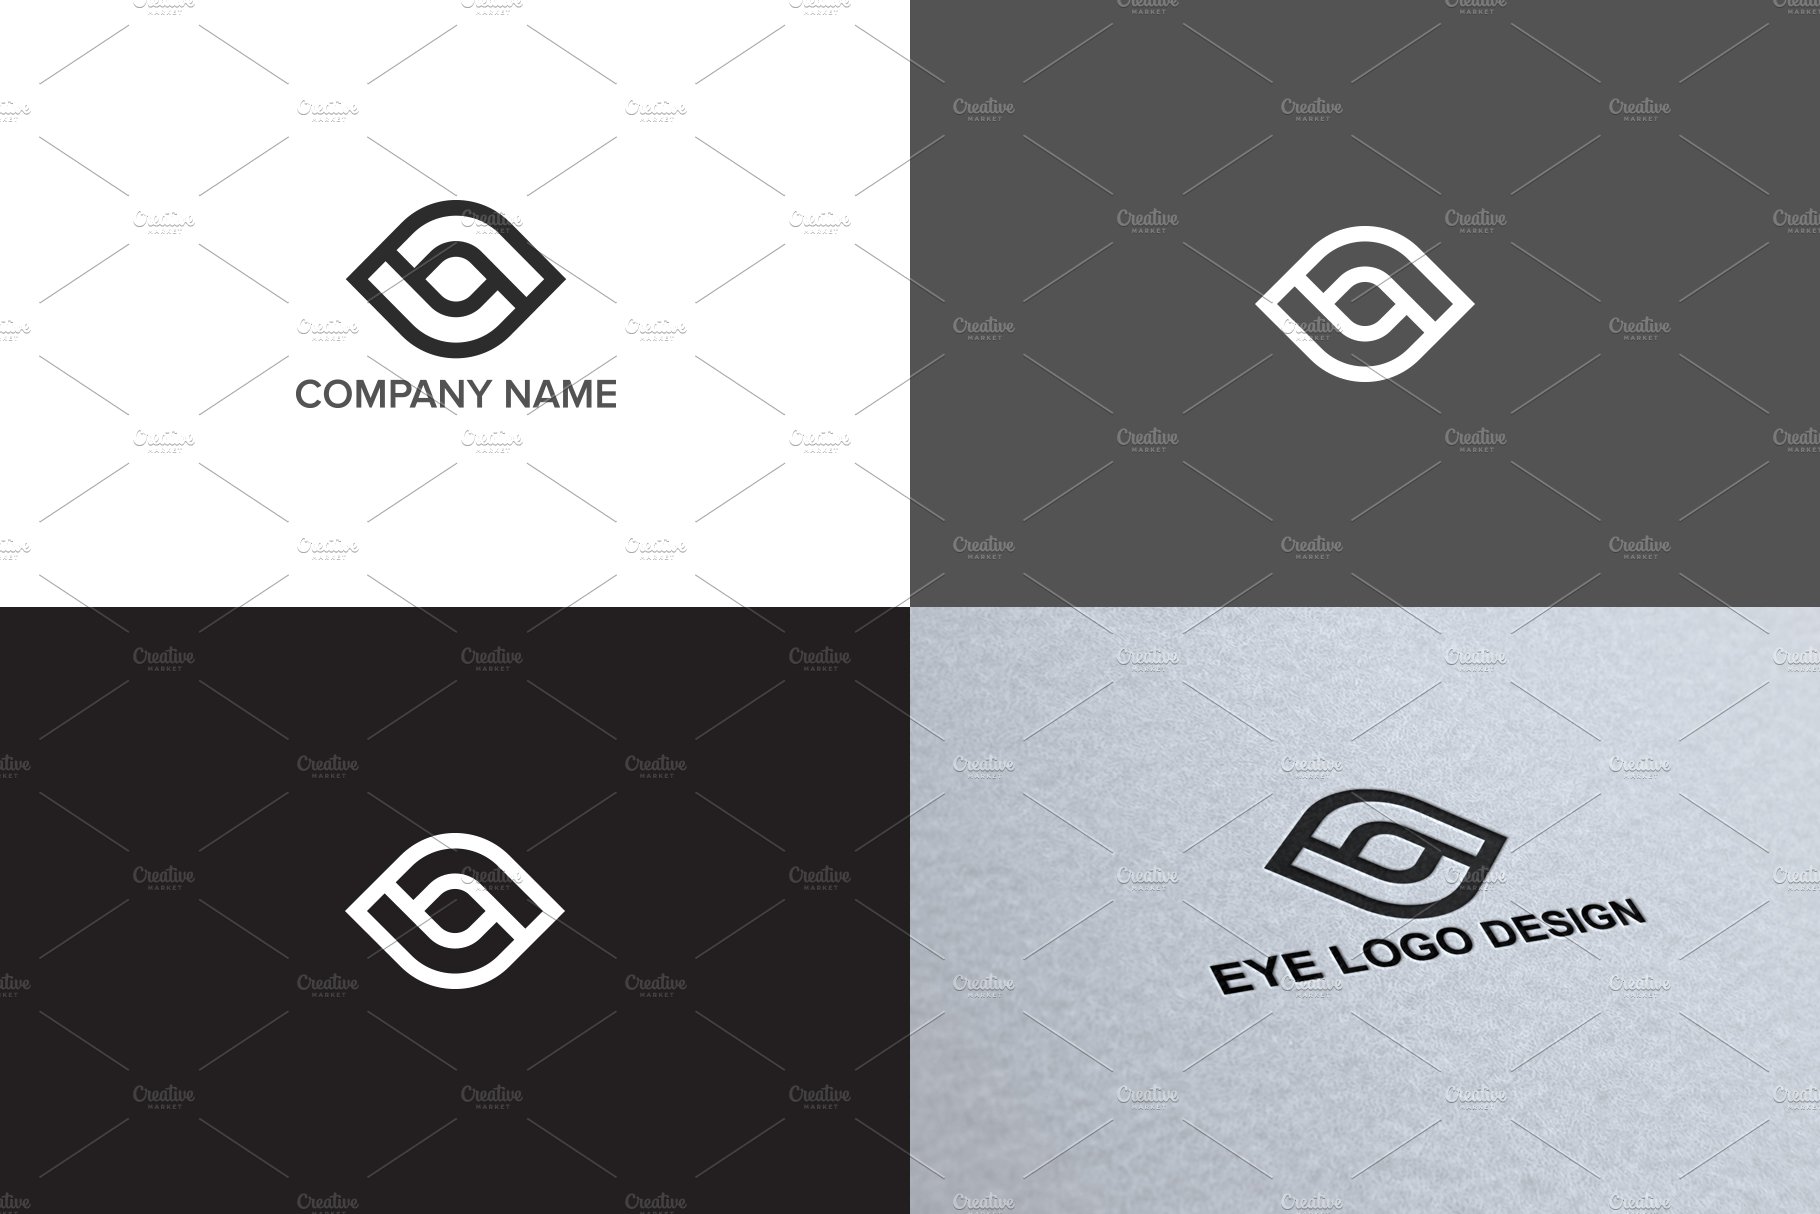 Eye logo design preview image.